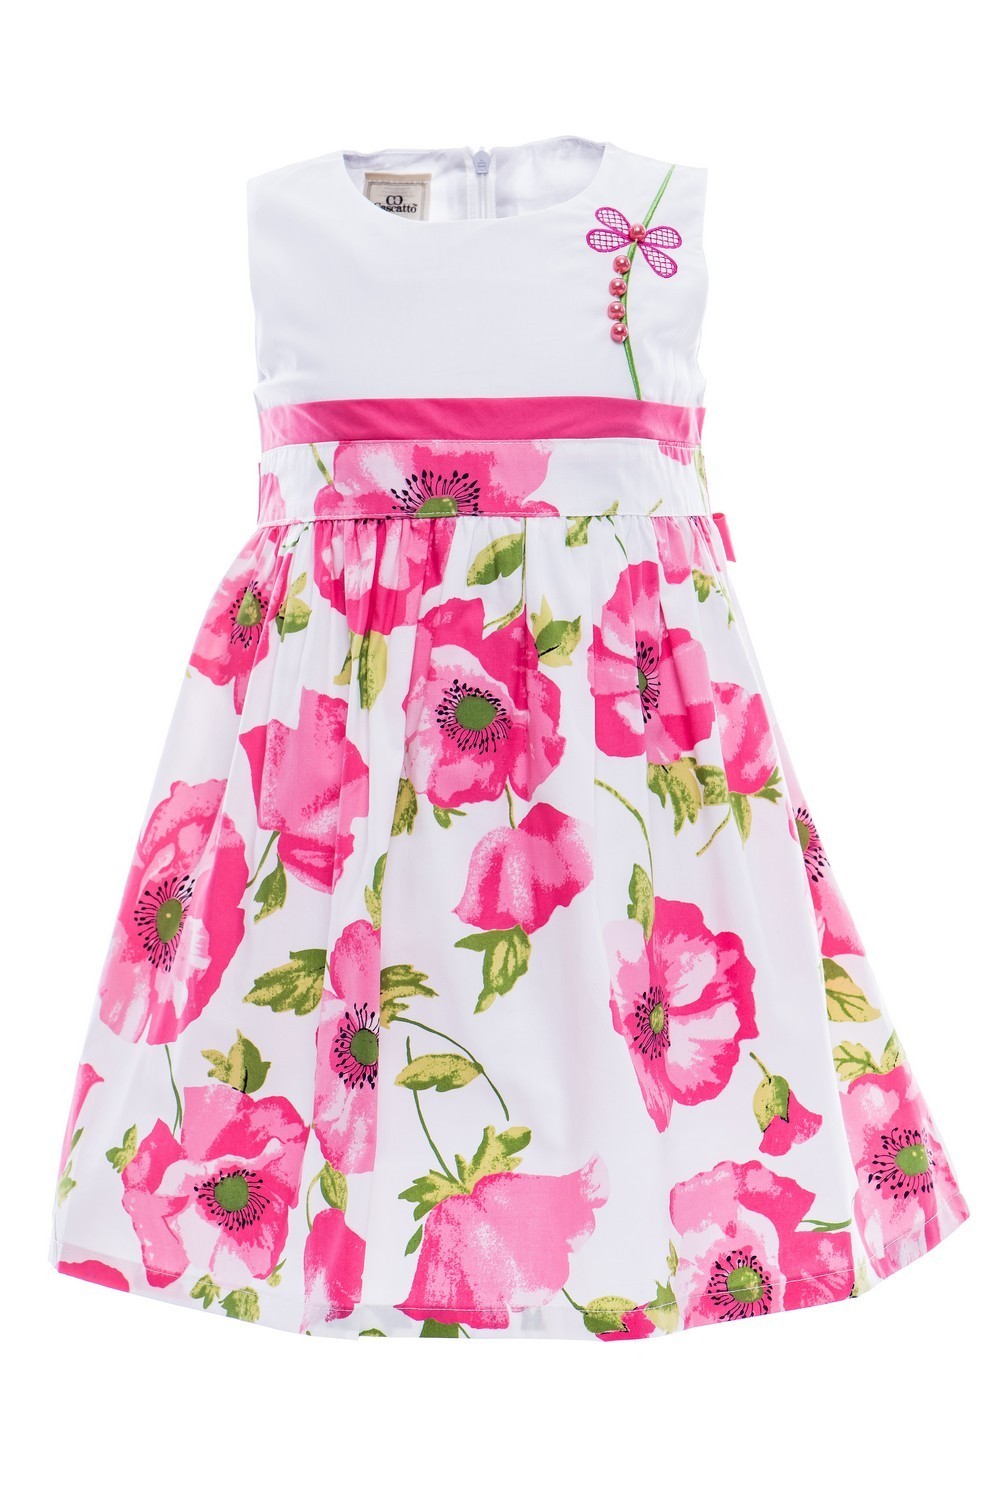 Купить Платье для девочки PL66 бело-розовый